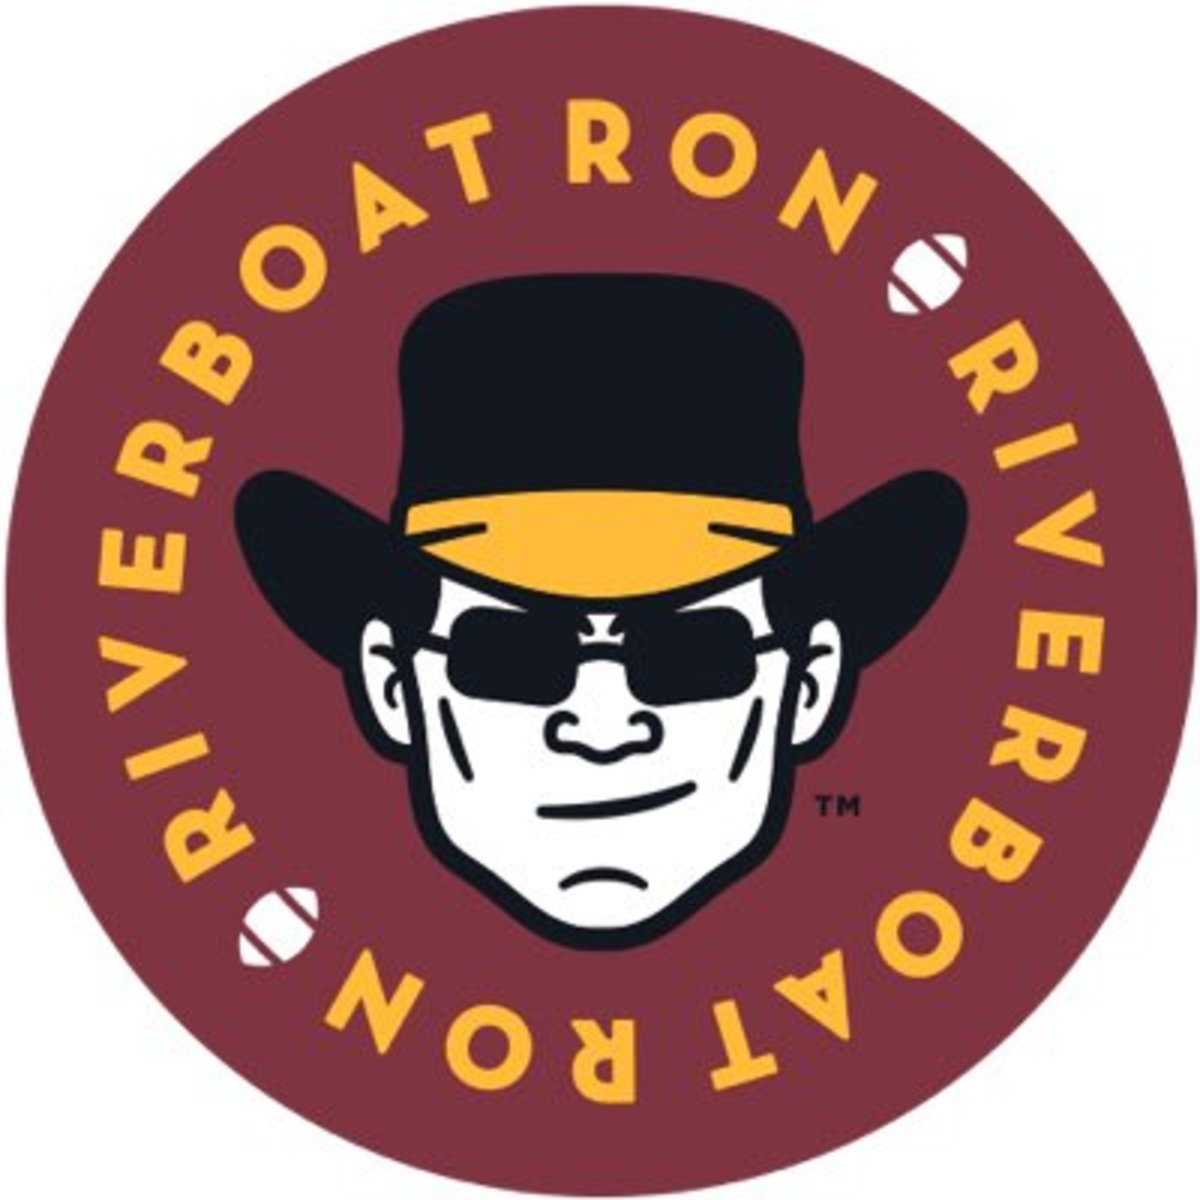 riverboat ron nickname origin